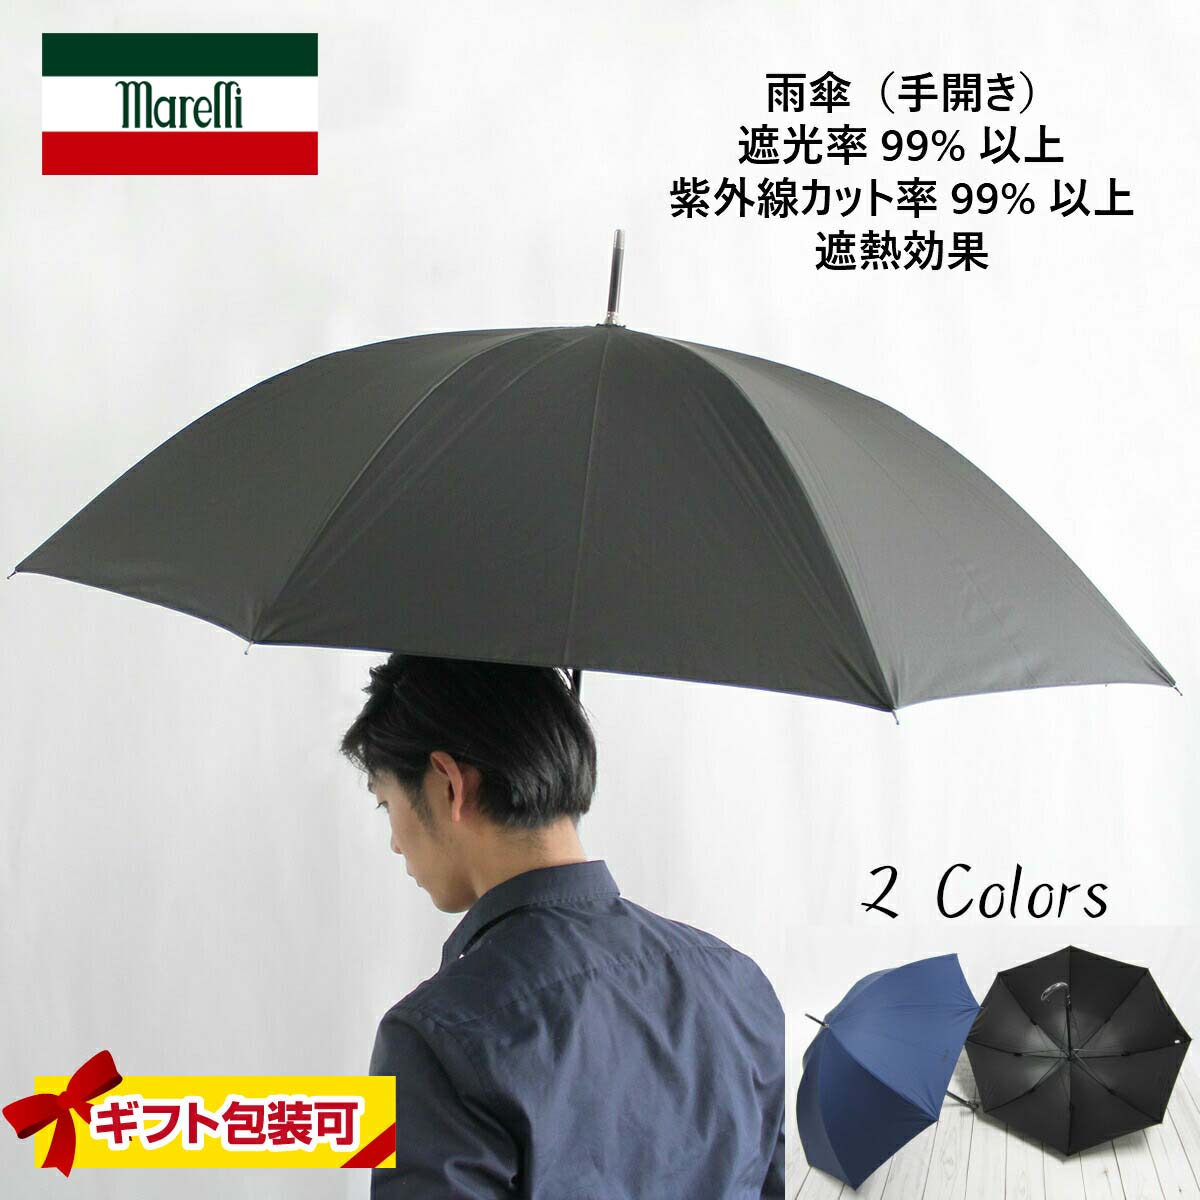 傘 メンズ ブラック（黒）/ネイビー ブランド マレリー 手開き 長傘 雨傘 おしゃれ 雨晴兼用 父の日ギフト